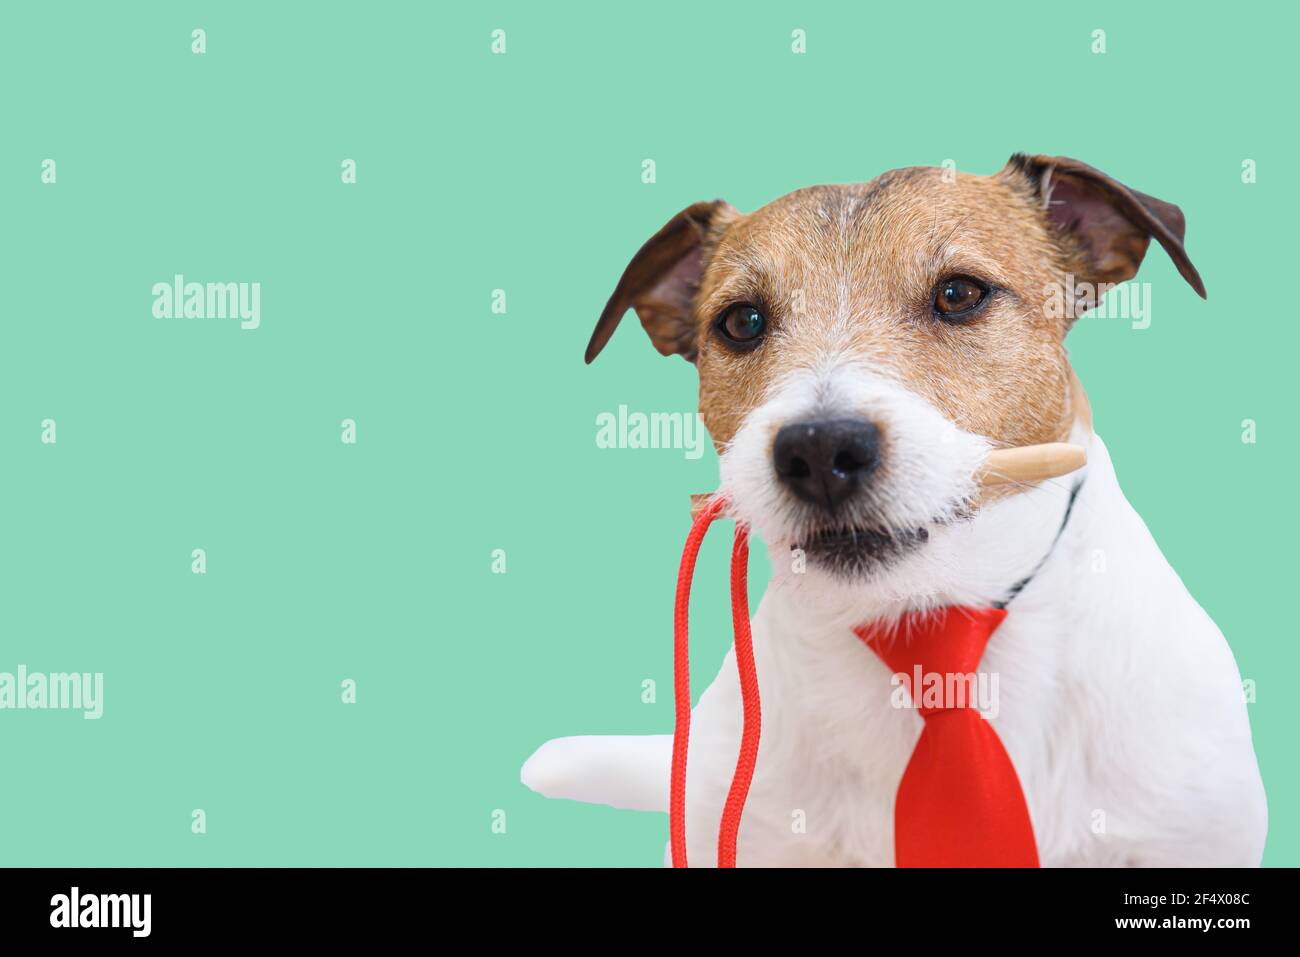 Concept humoristique de déplacer l'expression de l'aiguille avec le port de  chien cravate rouge et aiguille de maintien dans la bouche Photo Stock -  Alamy